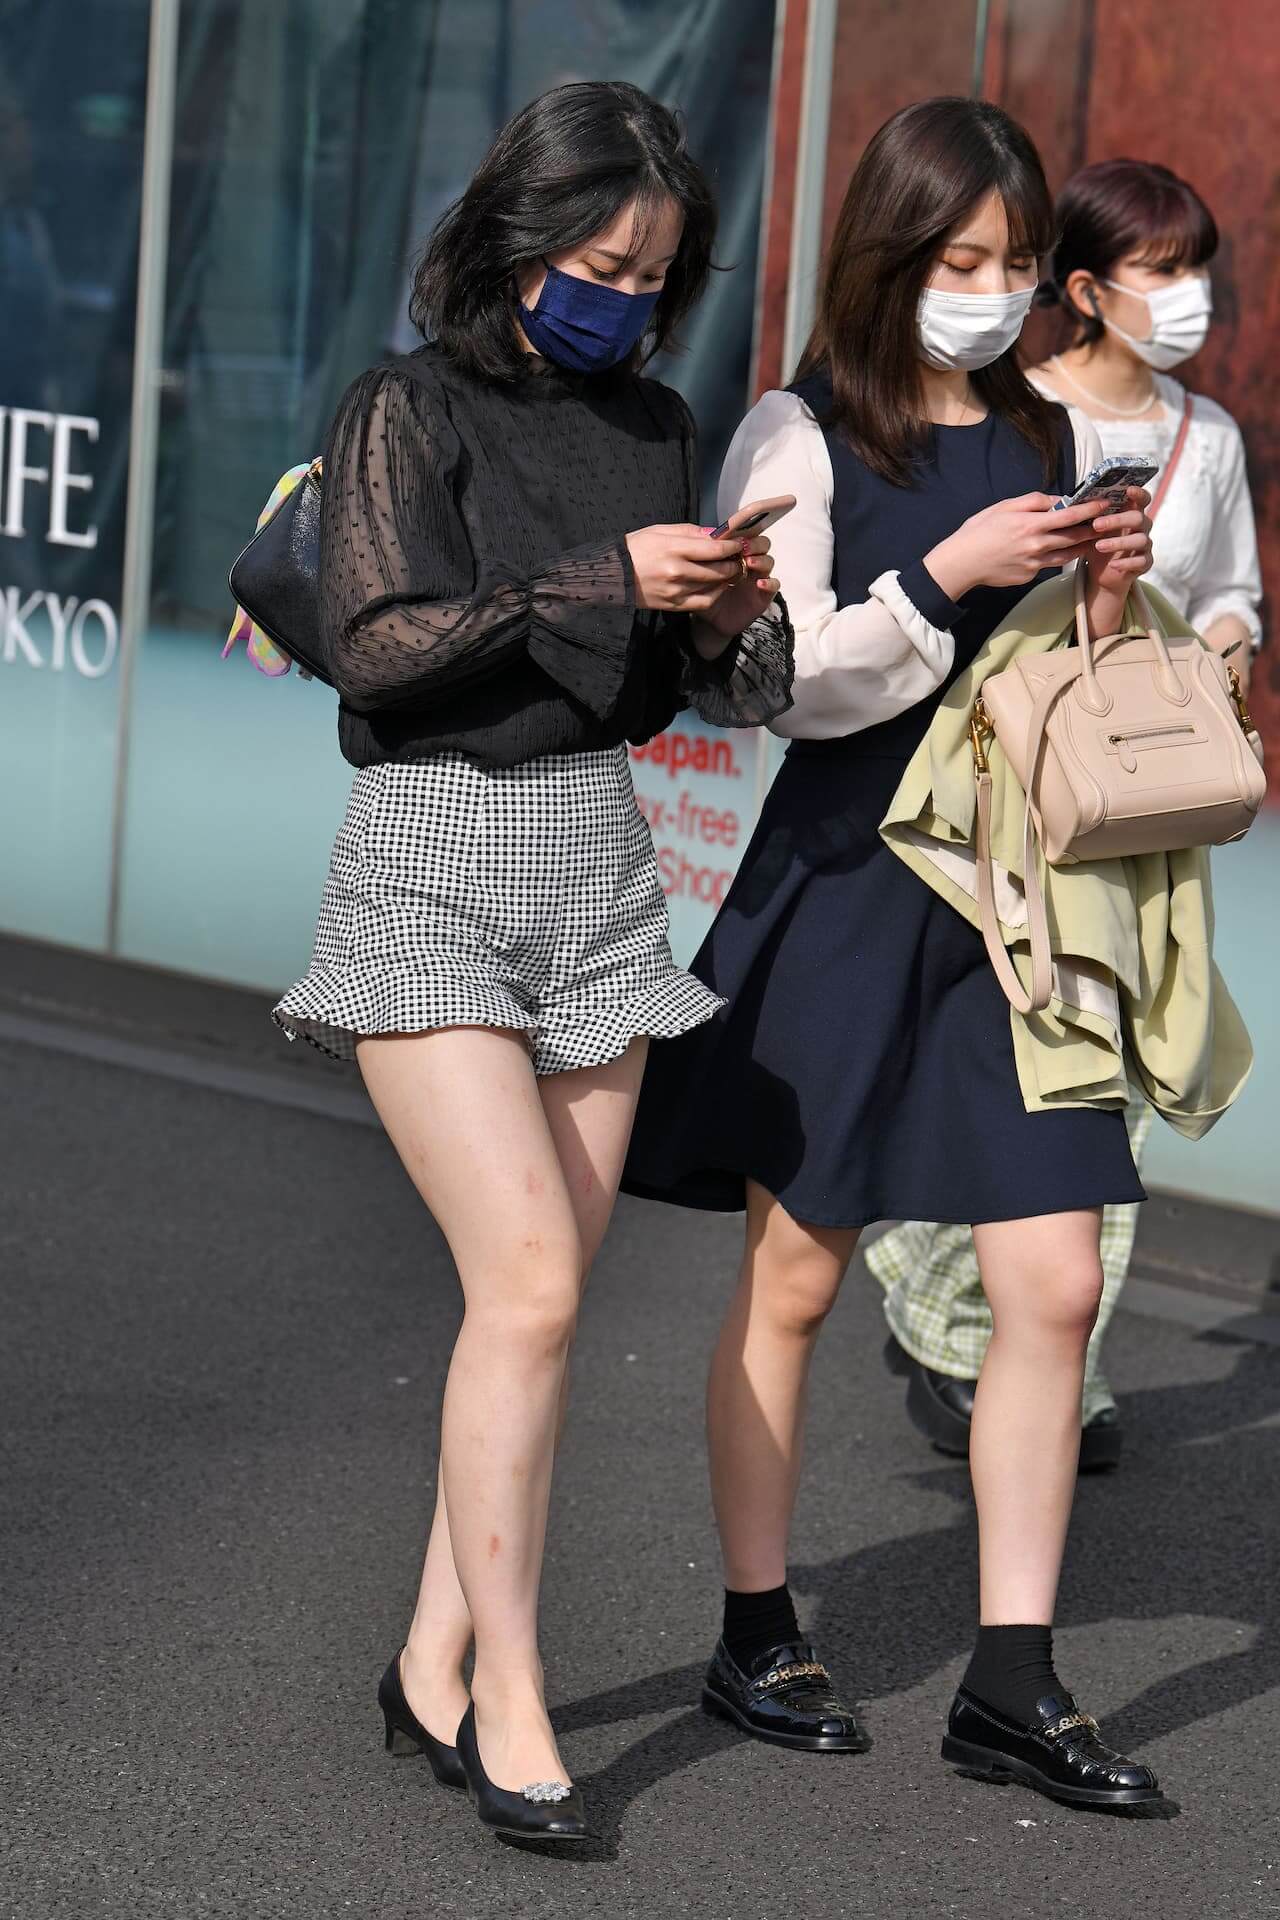 【画像】女子高生と思しき女の子たちの街撮り私服の一眼写真